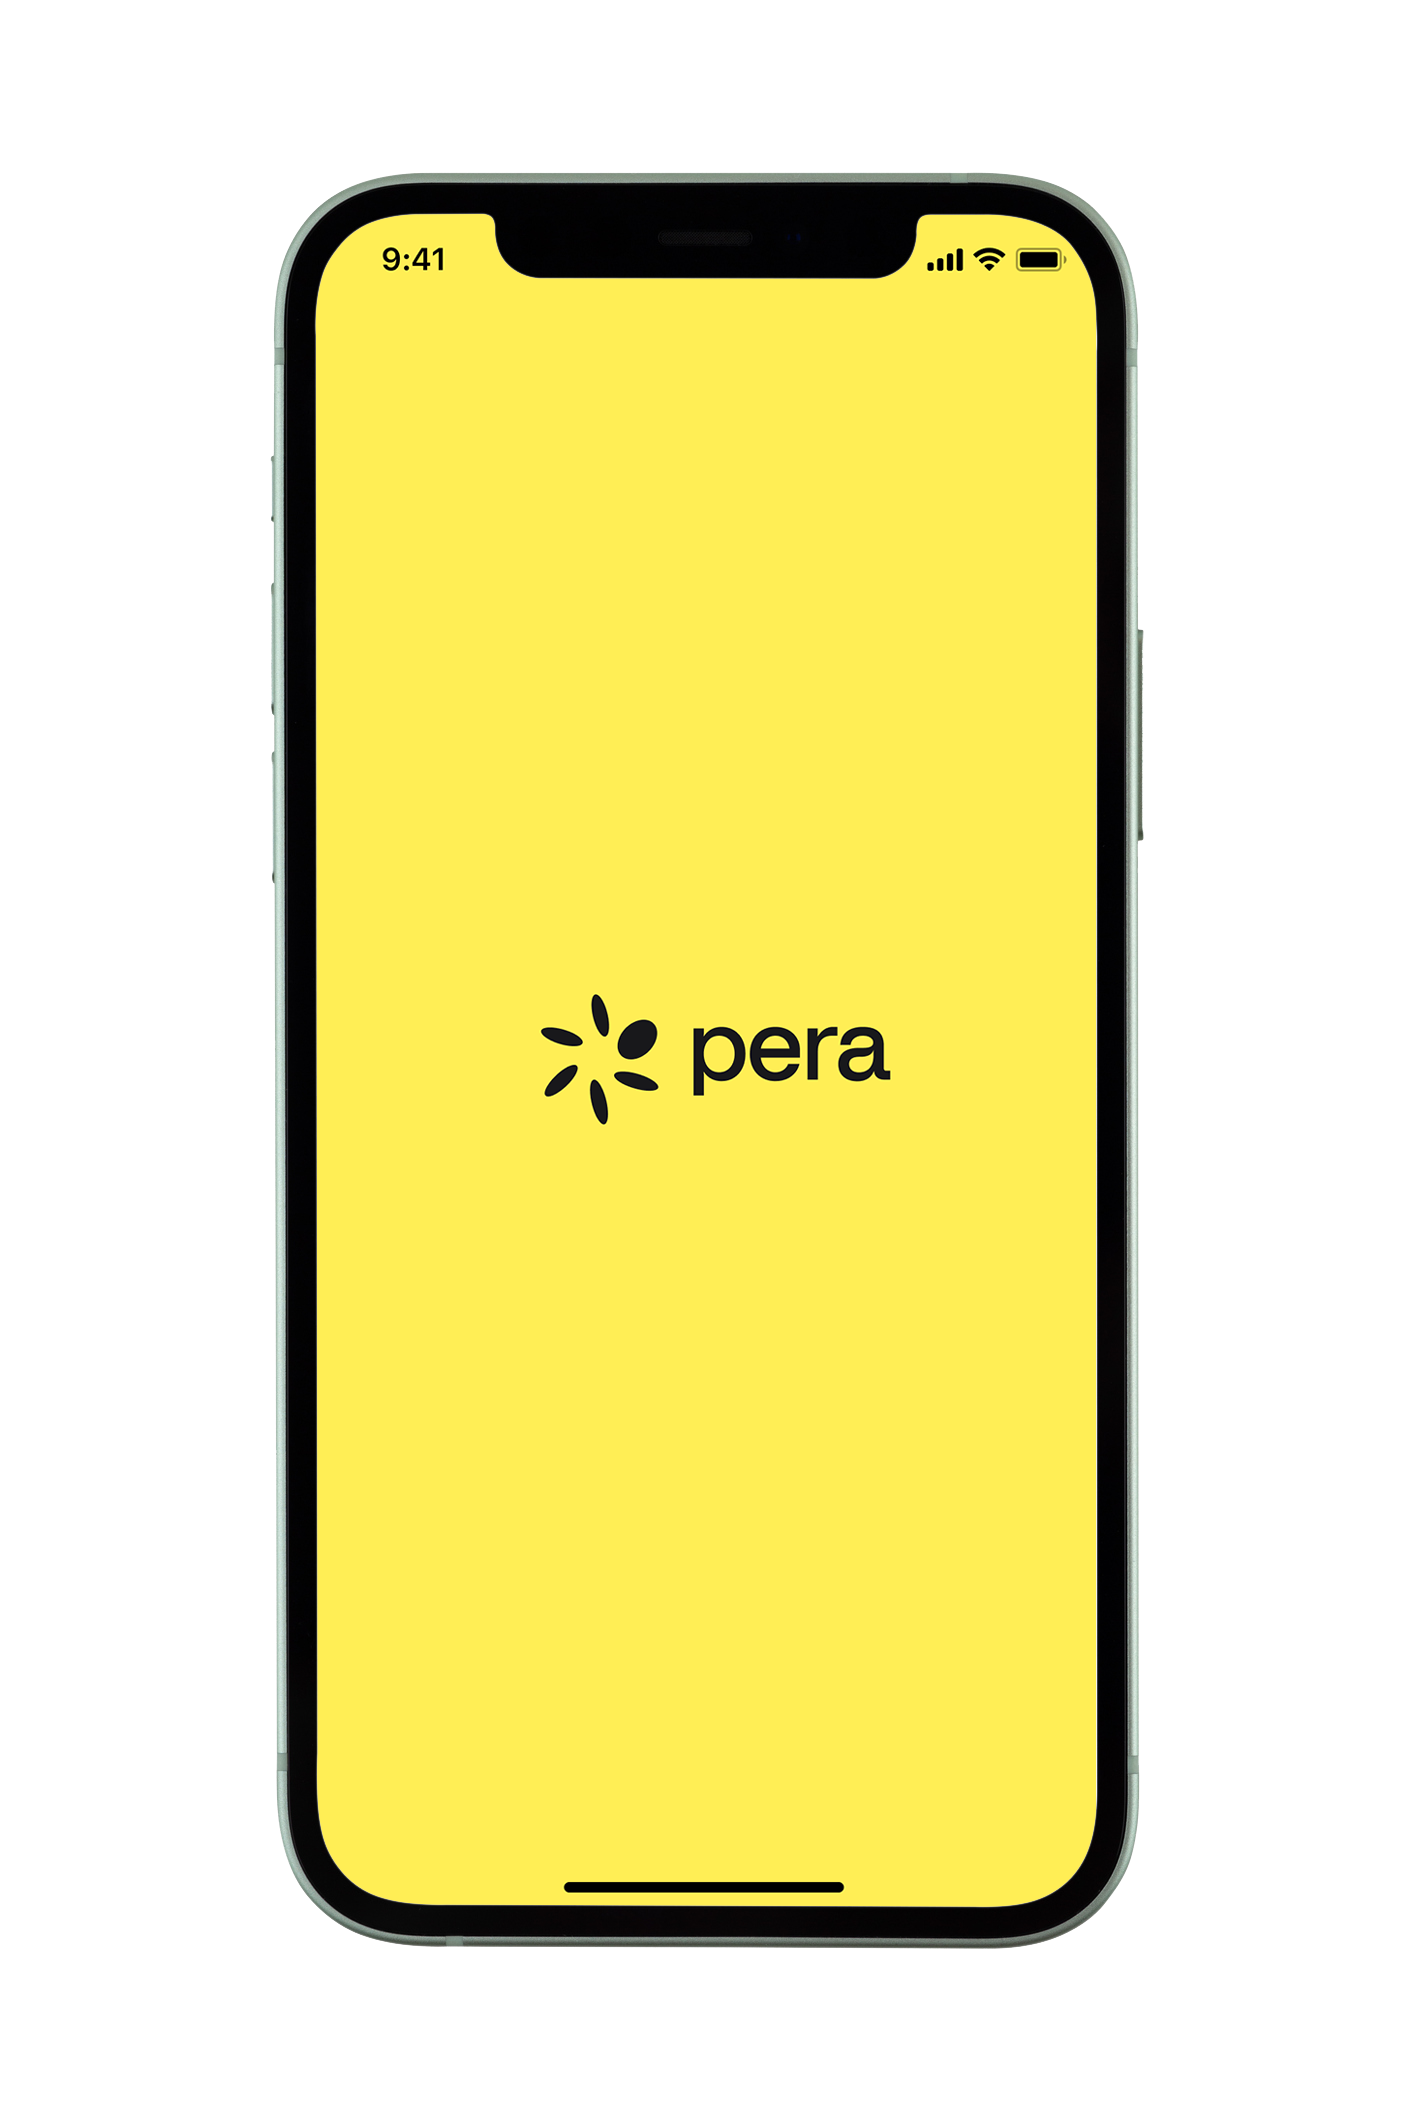 Pera Wallet App